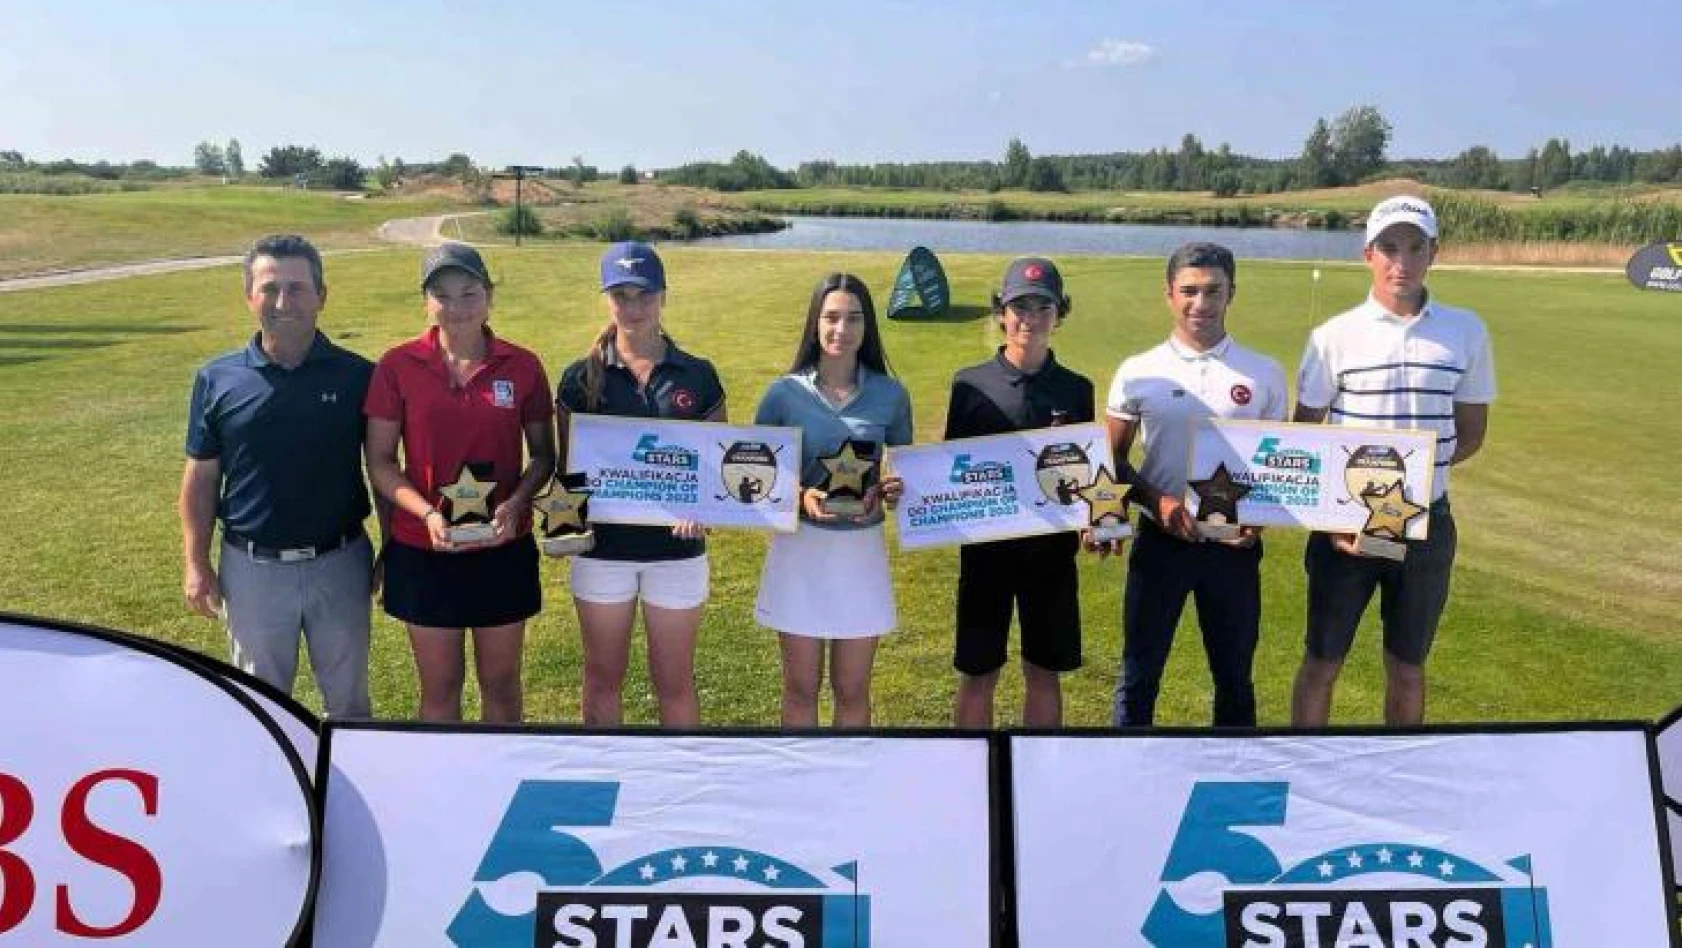 Milli golfçüler, Avrupa'dan 6 kupayla dönüyor